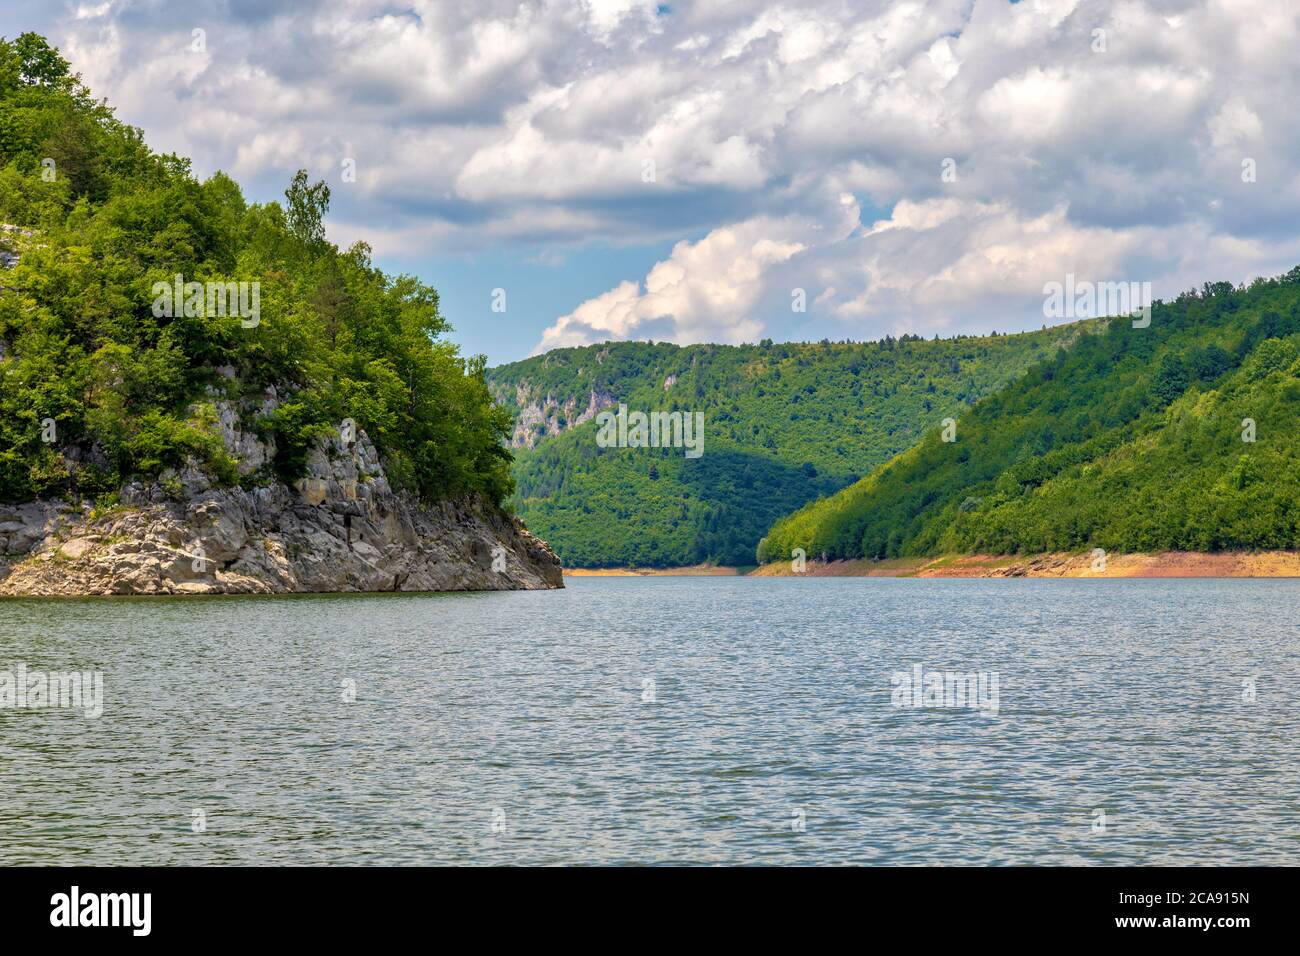 Méandres du canyon de la rivière Uvac. Réserve naturelle spéciale, destination touristique populaire dans le sud-ouest de la Serbie. Banque D'Images